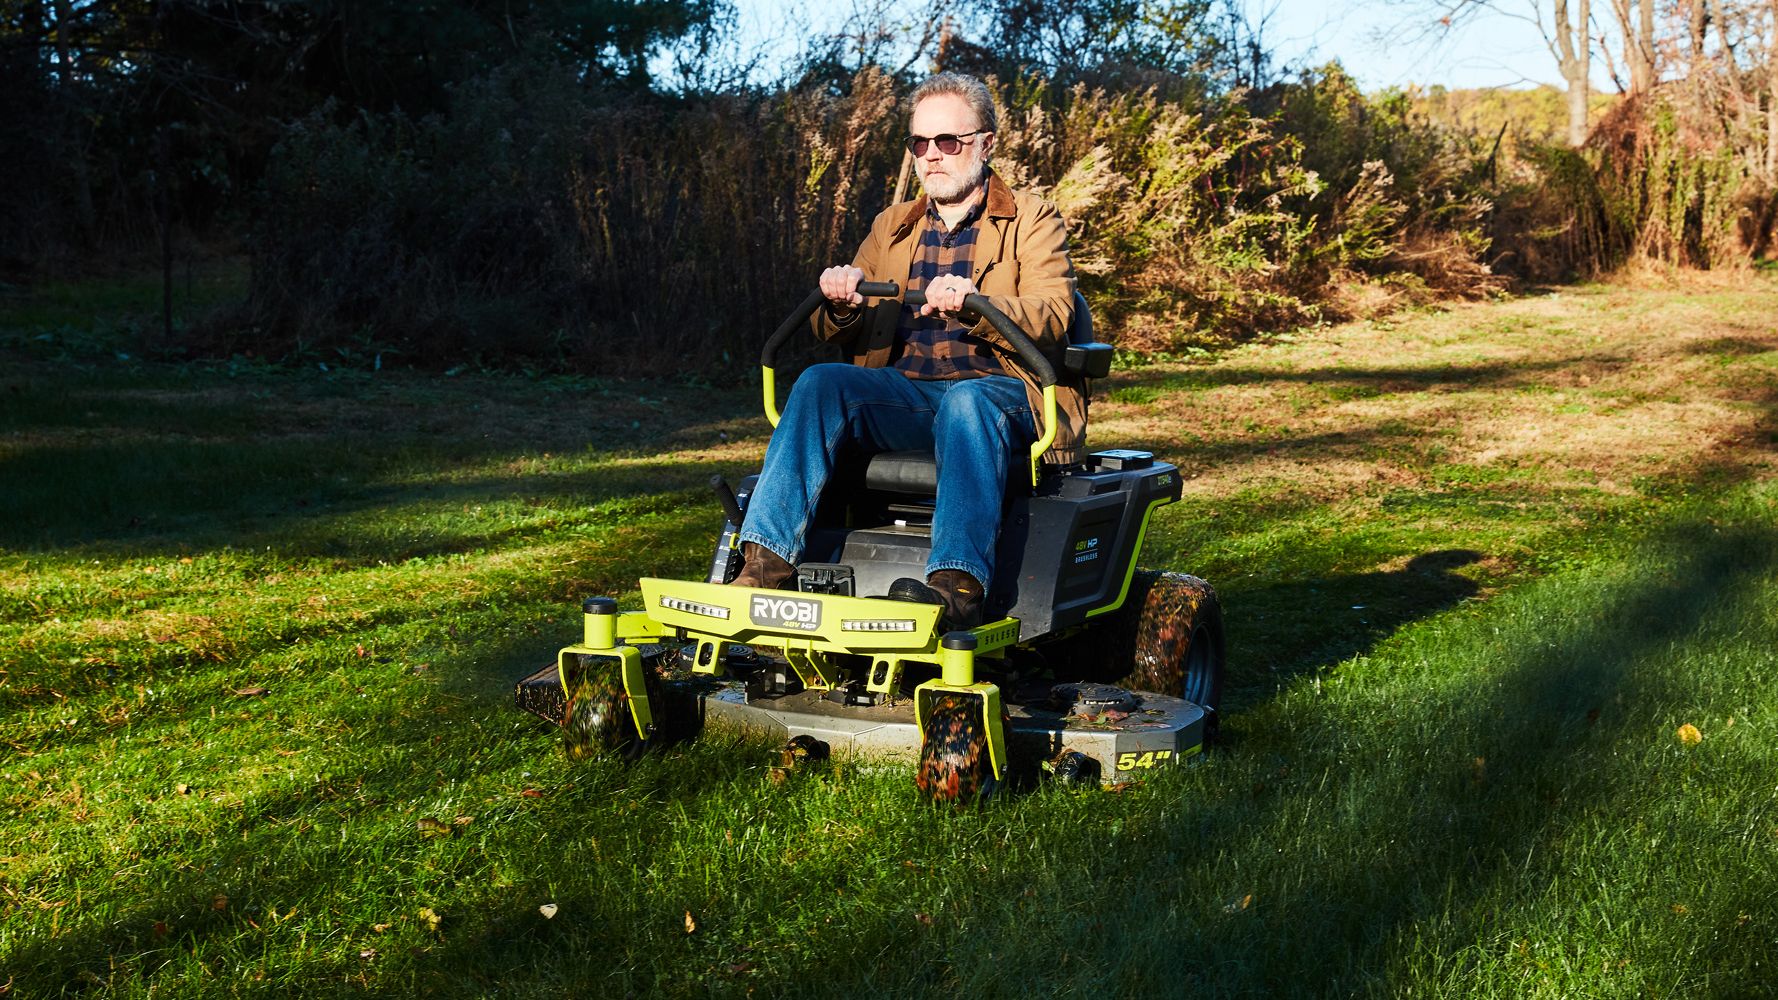 Best Lawn Mower under 200